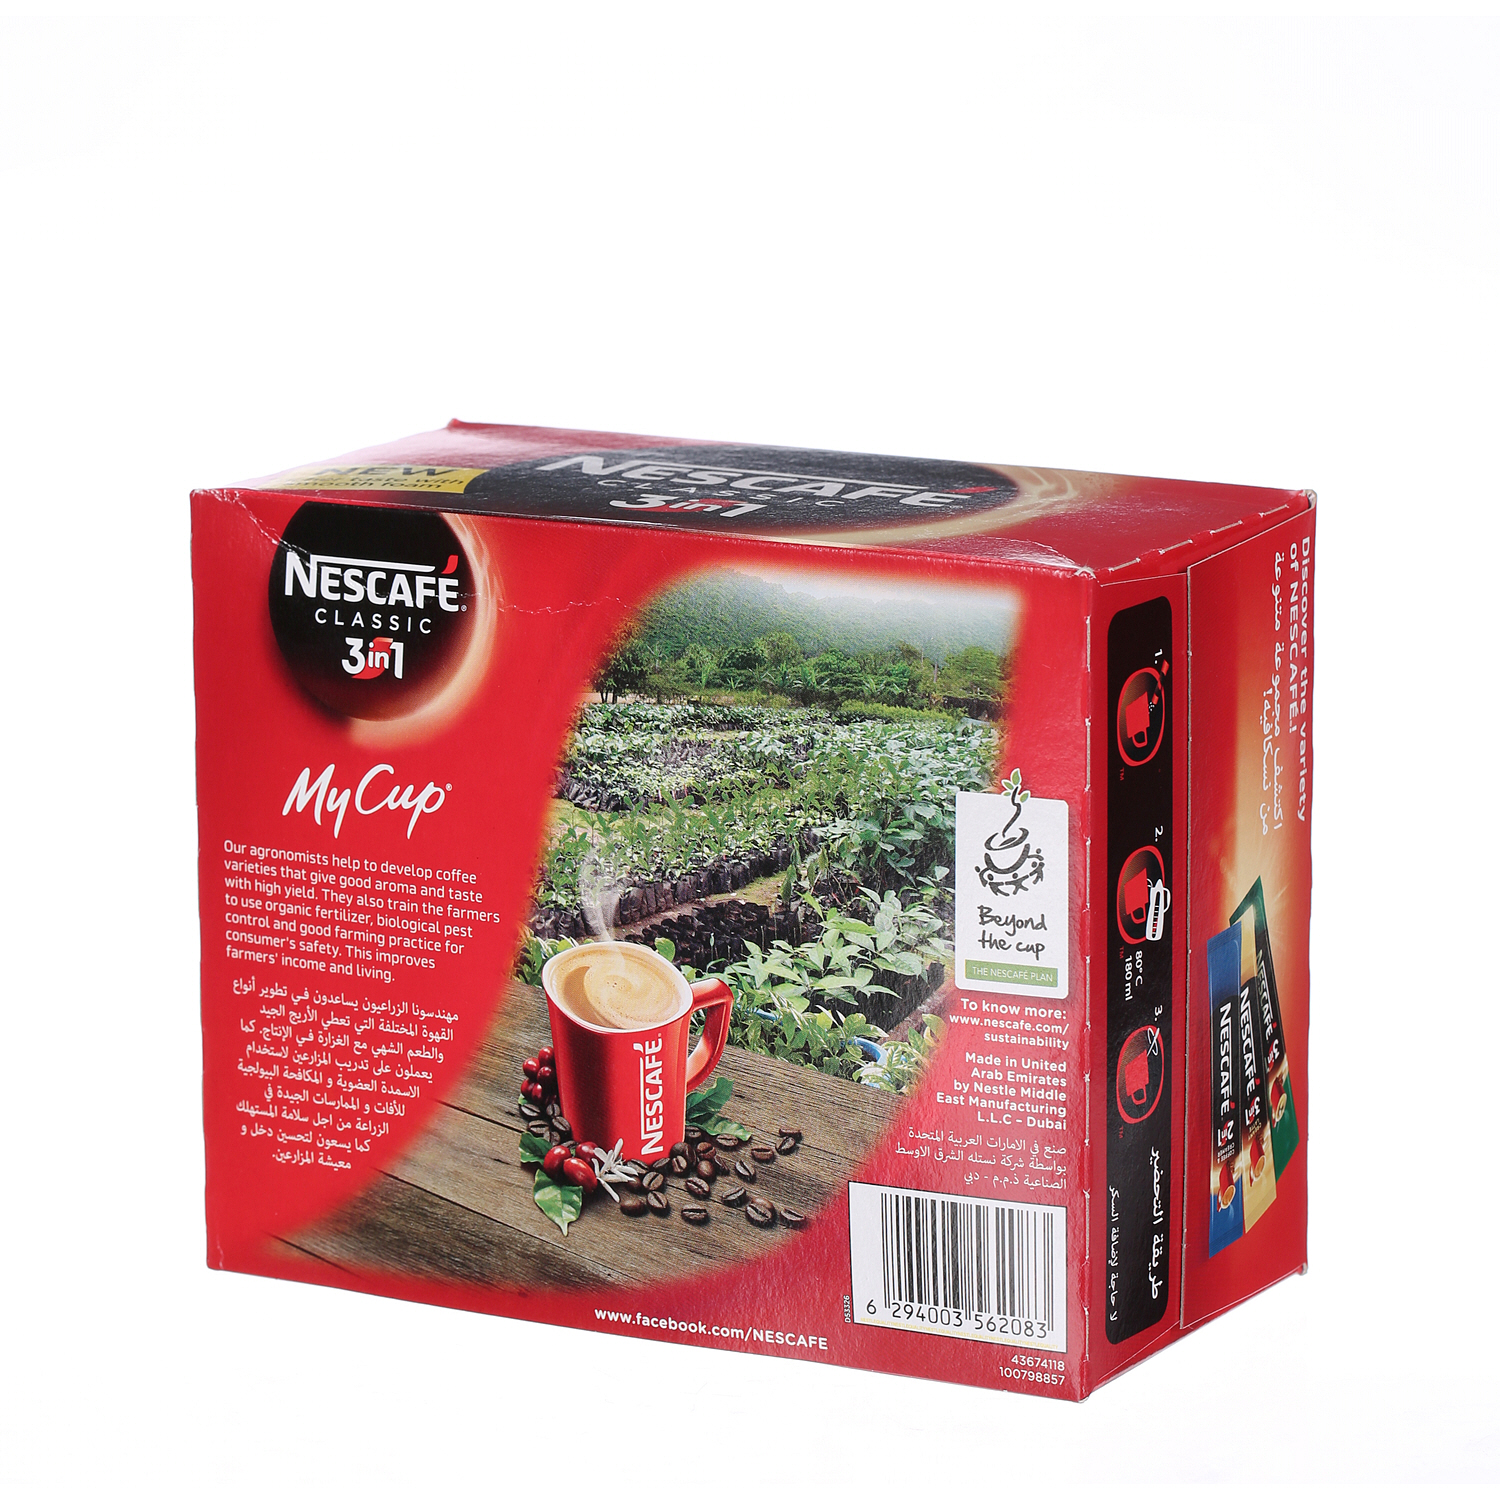 Nescafe 3 in 1 Classic Coffee Sticks 20 g × 24 Pack